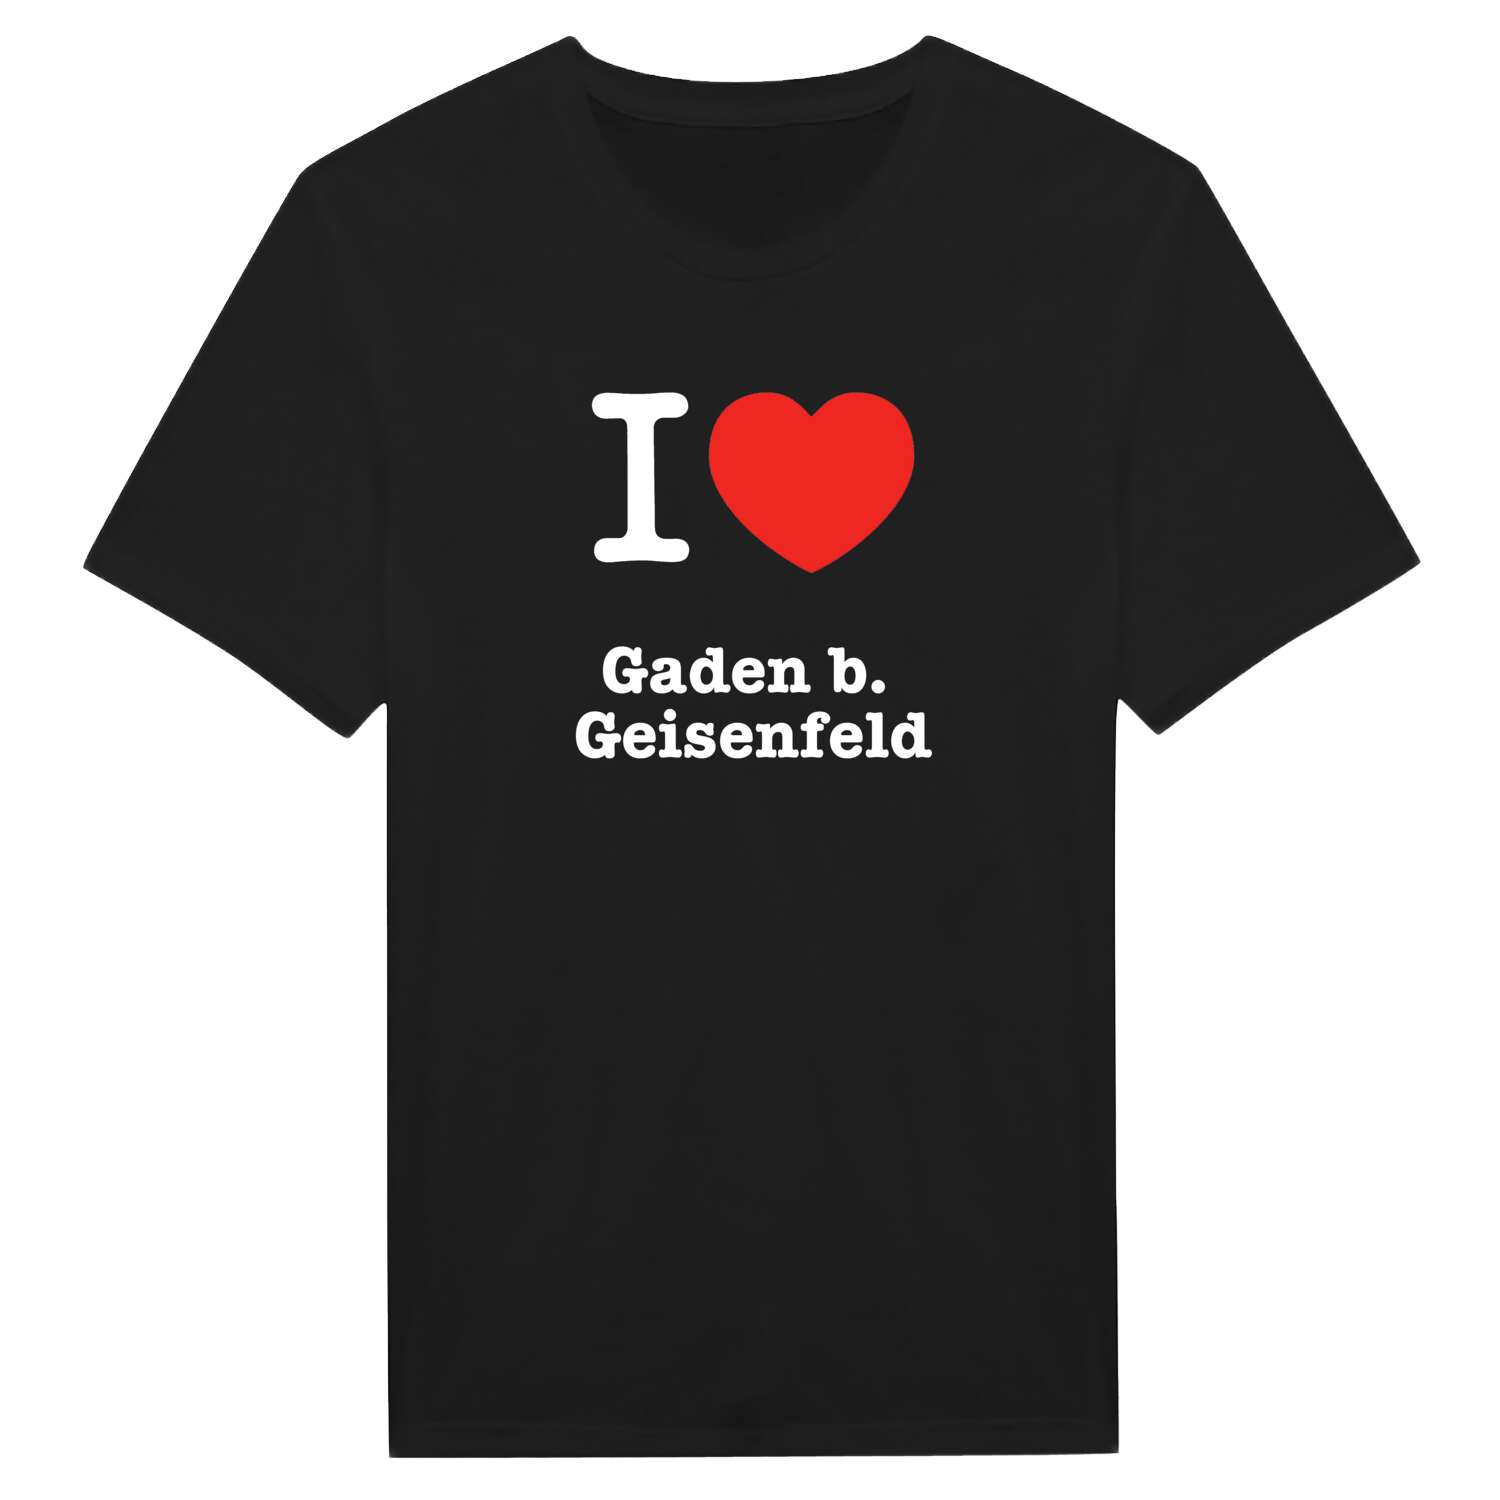 Gaden b. Geisenfeld T-Shirt »I love«